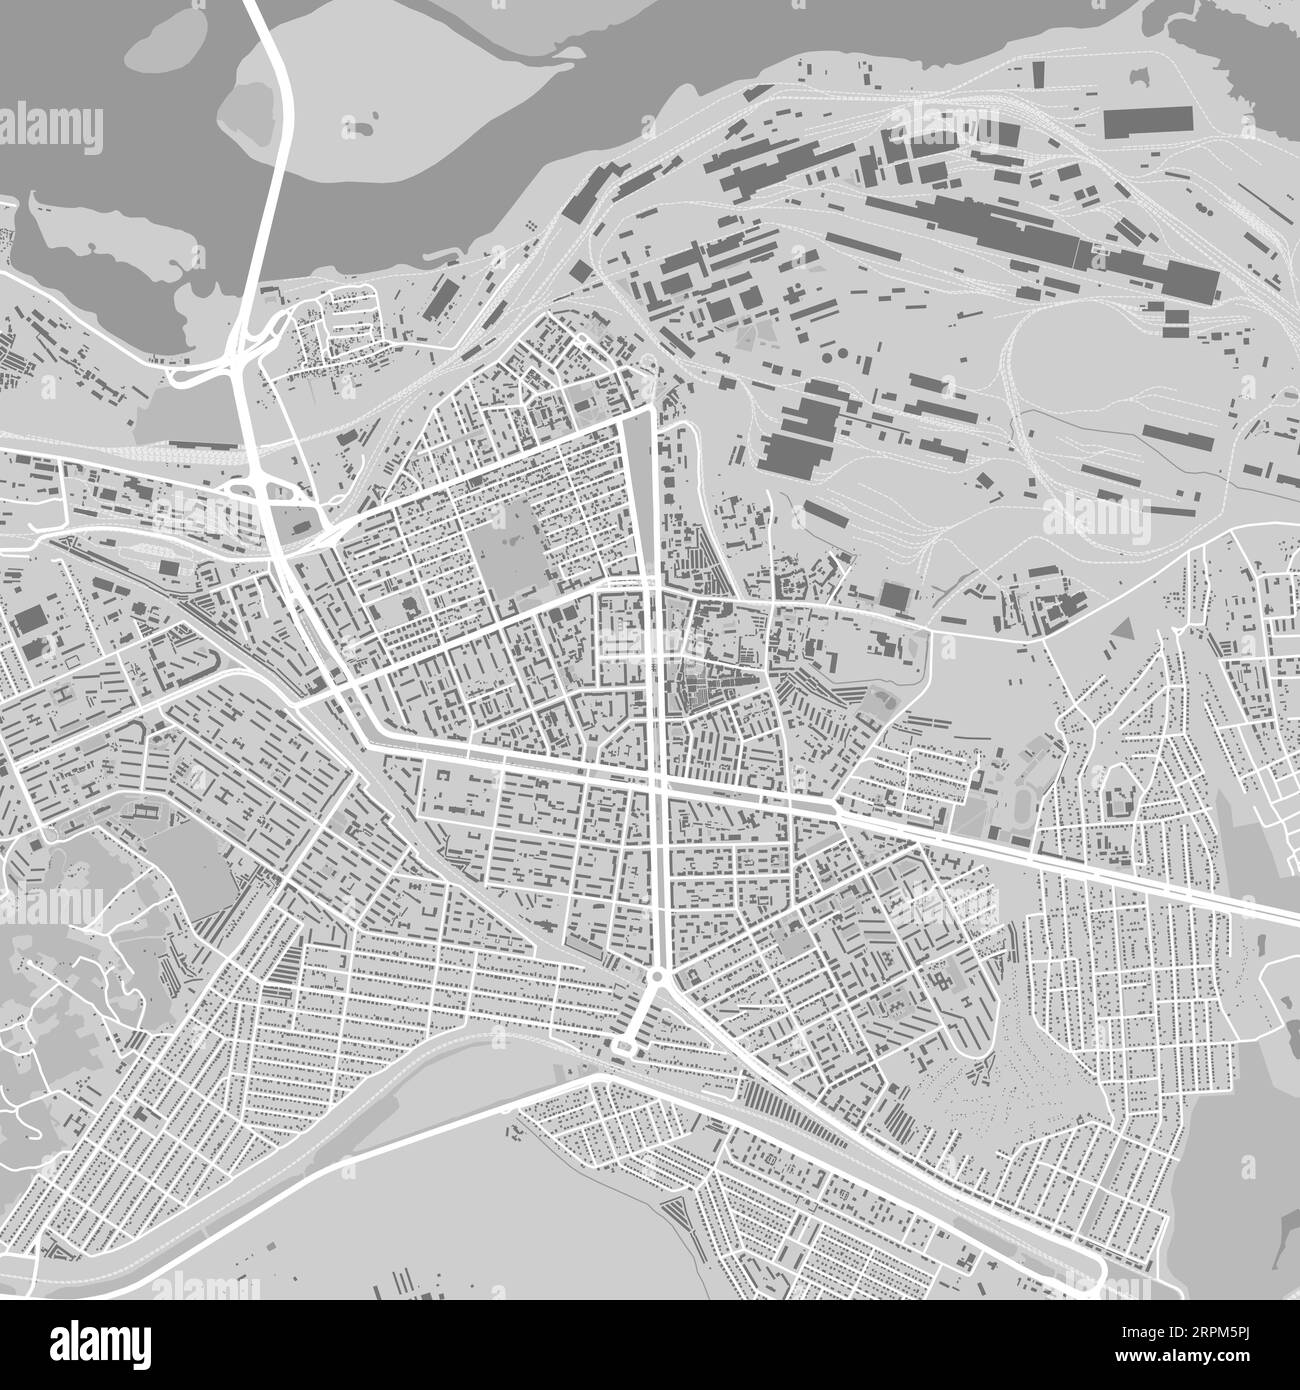 Carte de Kamianske ville, Ukraine. Affiche urbaine en noir et blanc. Image de la carte routière avec vue de la zone urbaine. Illustration de Vecteur